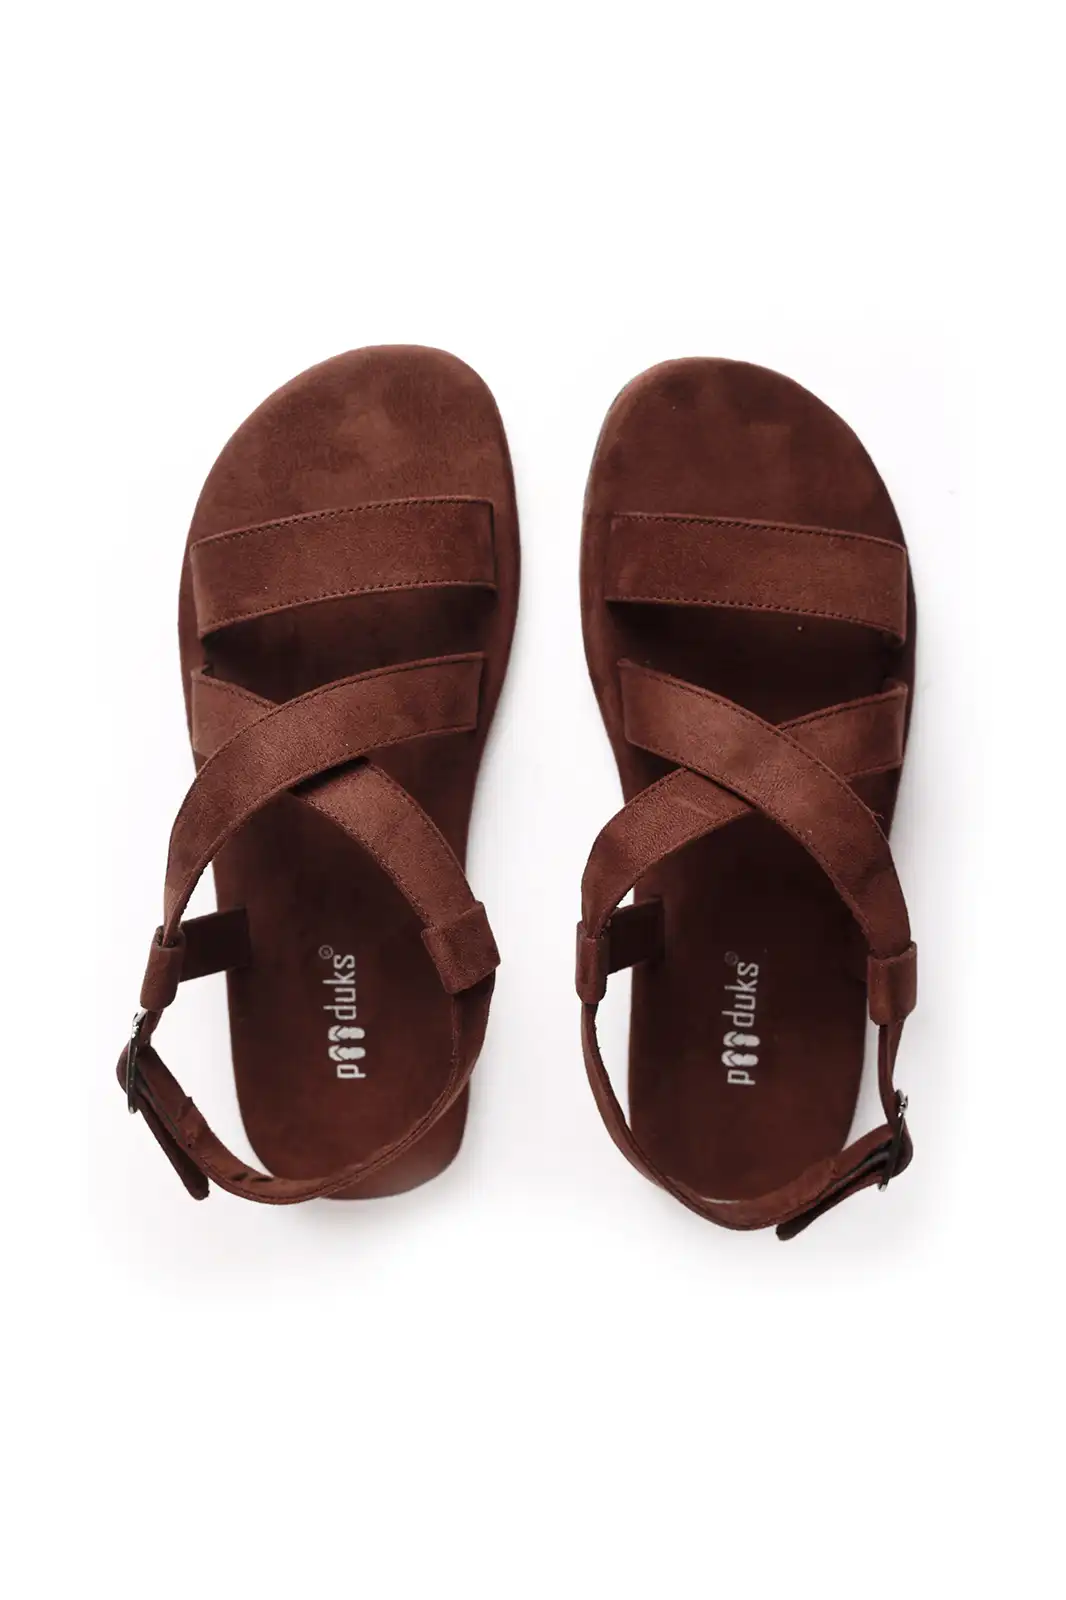 Louis Vuitton Sandals & Flip-Flops for Men - Poshmark-sgquangbinhtourist.com.vn